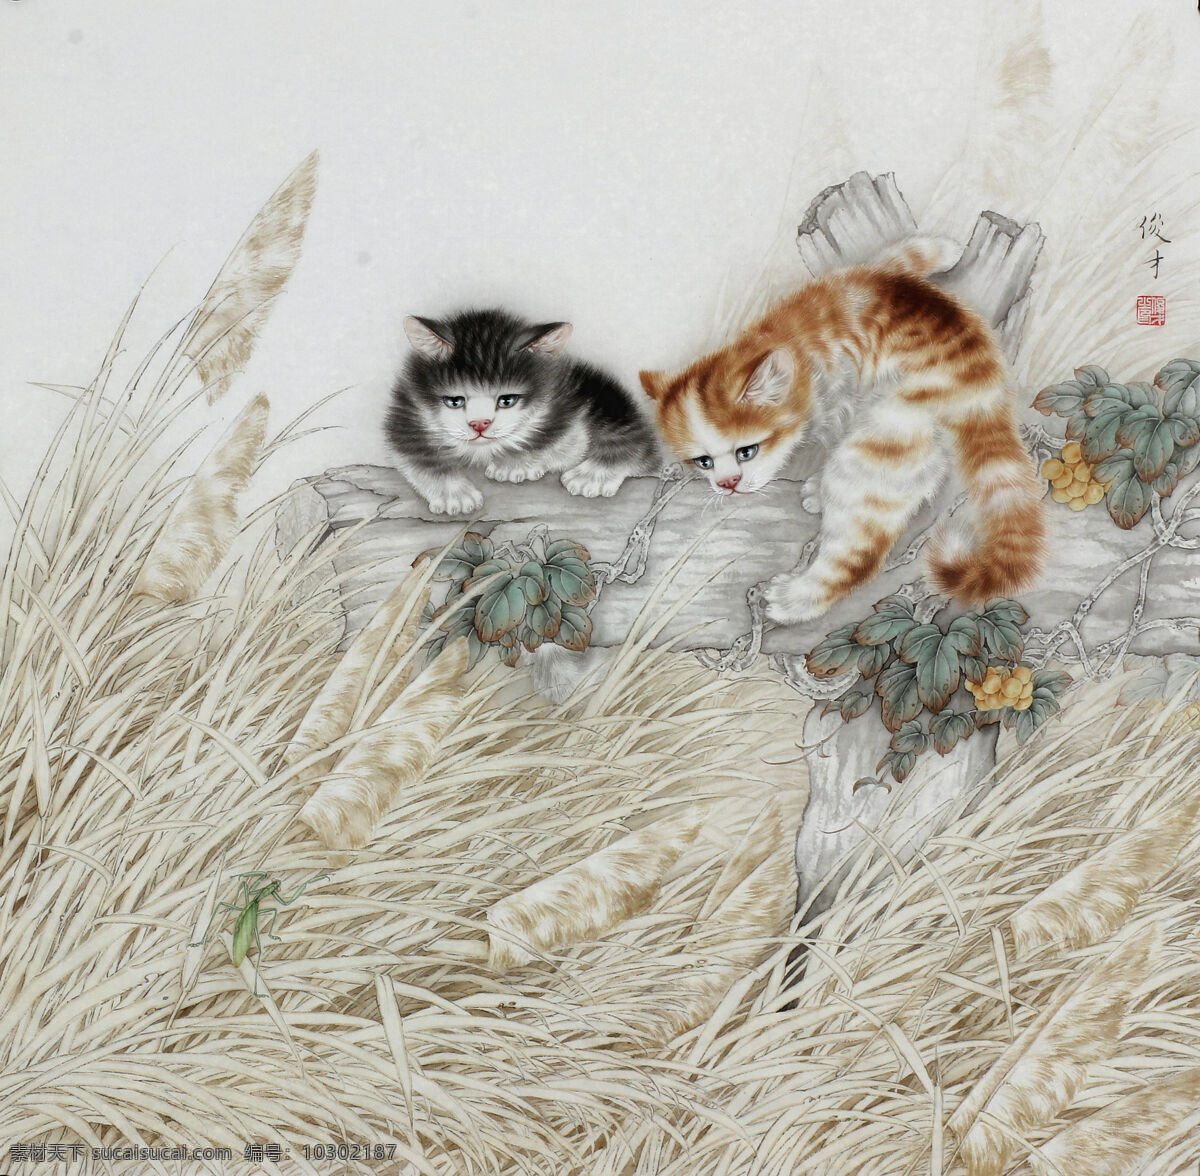 李俊才工笔画 猫趣图 李俊才 工笔画 猫 芦苇 螳螂 绘画书法 文化艺术